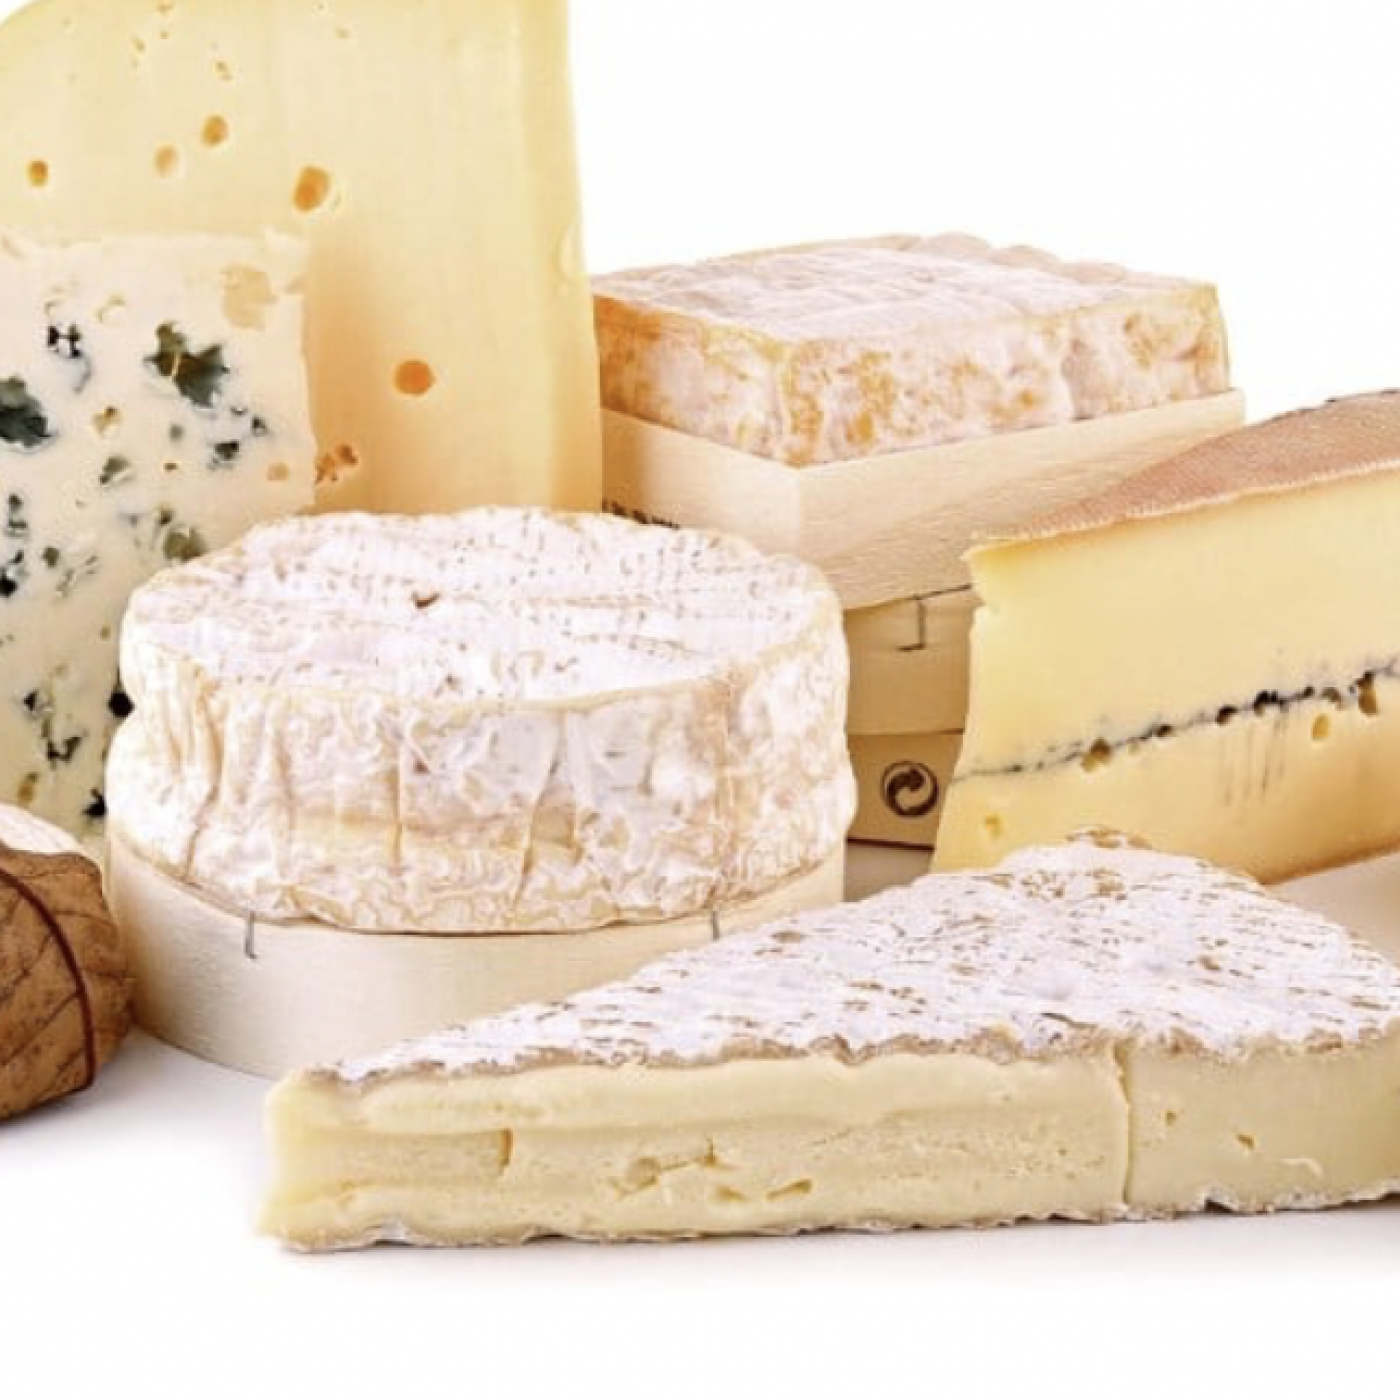 Le Journal des Bonnes Nouvelles : Manger du fromage augmenterait l’espérance de vie ?